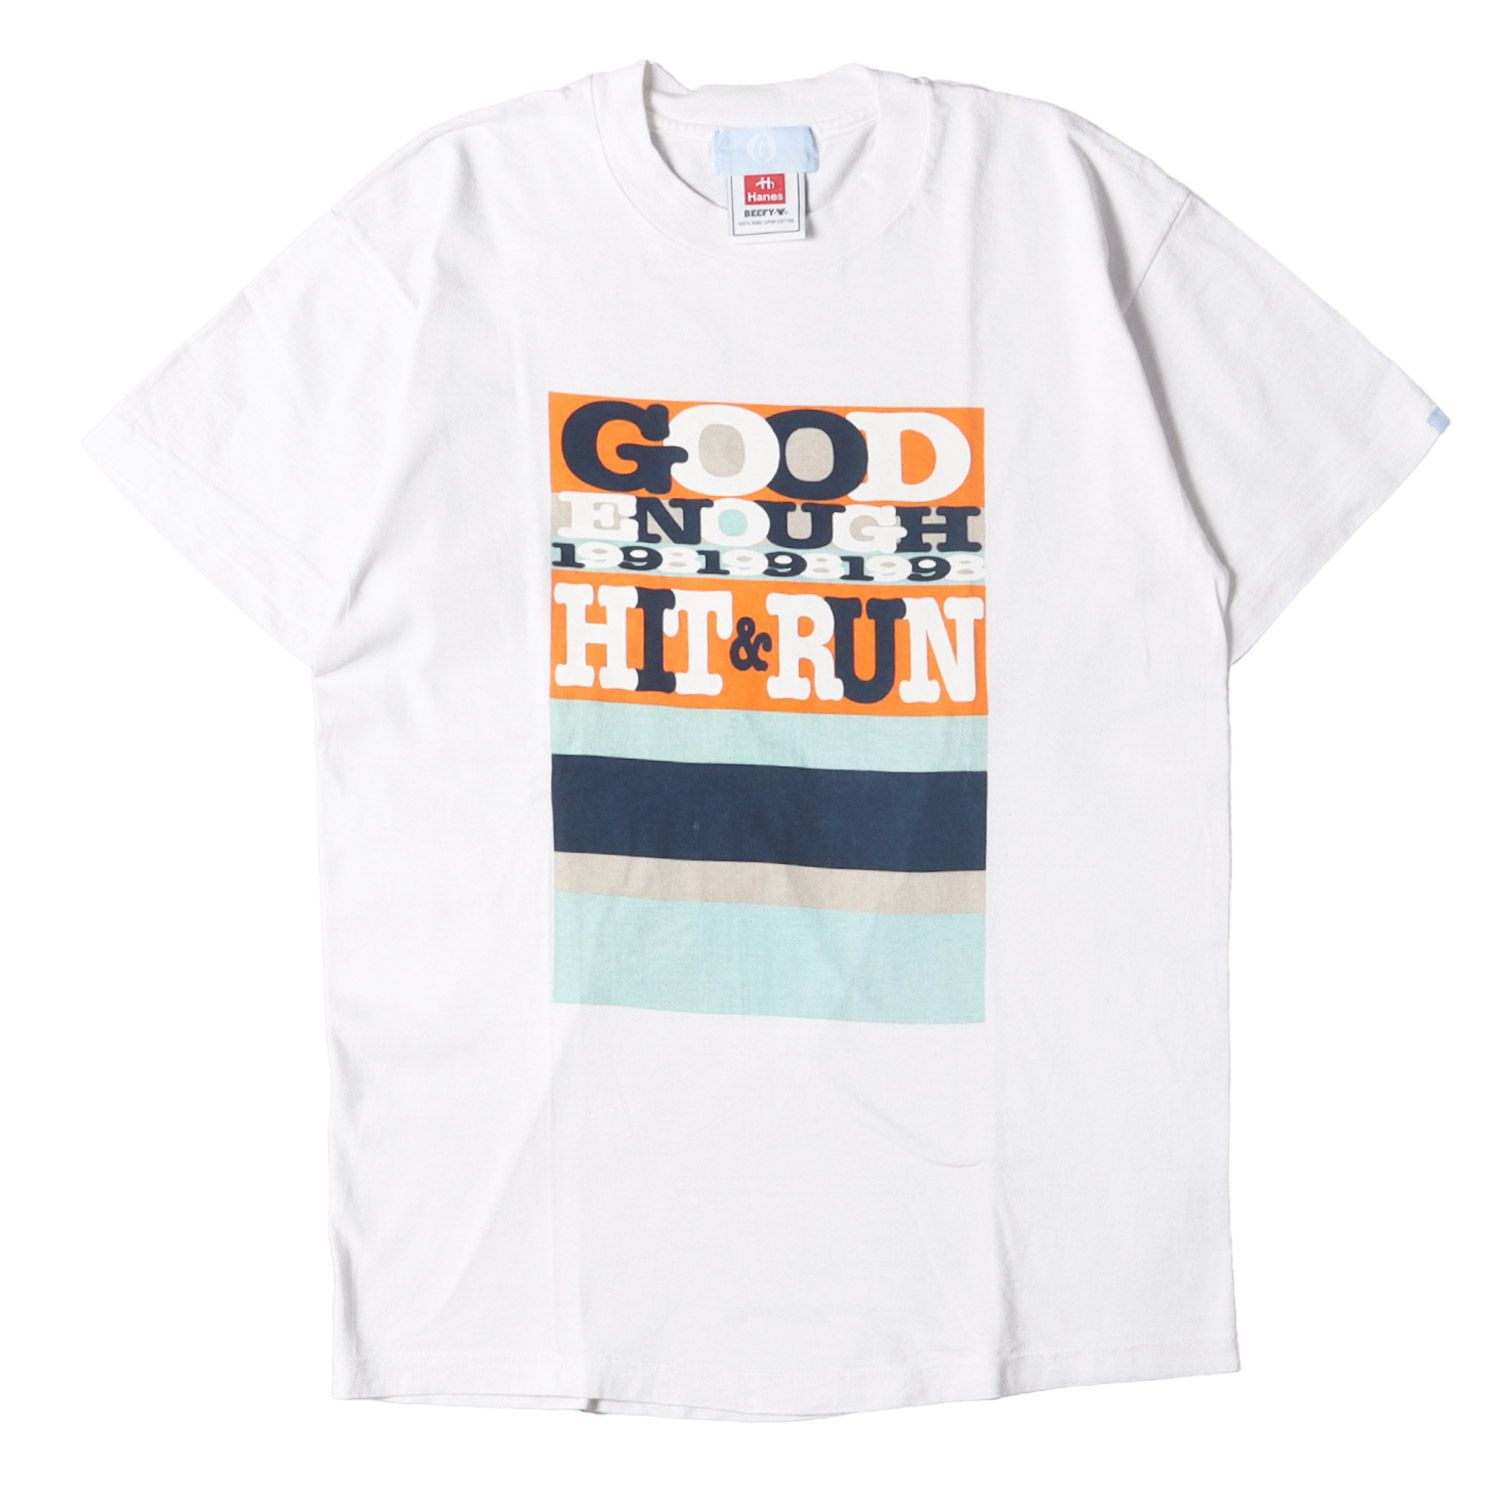 GOOD ENOUGH グッドイナフ Tシャツ サイズ:M 90s HIT&RUN オープン記念 プリント クルーネック 半袖 Tシャツ 1998年製  ホワイト 白 トップス カットソー ブランド アーカイブ